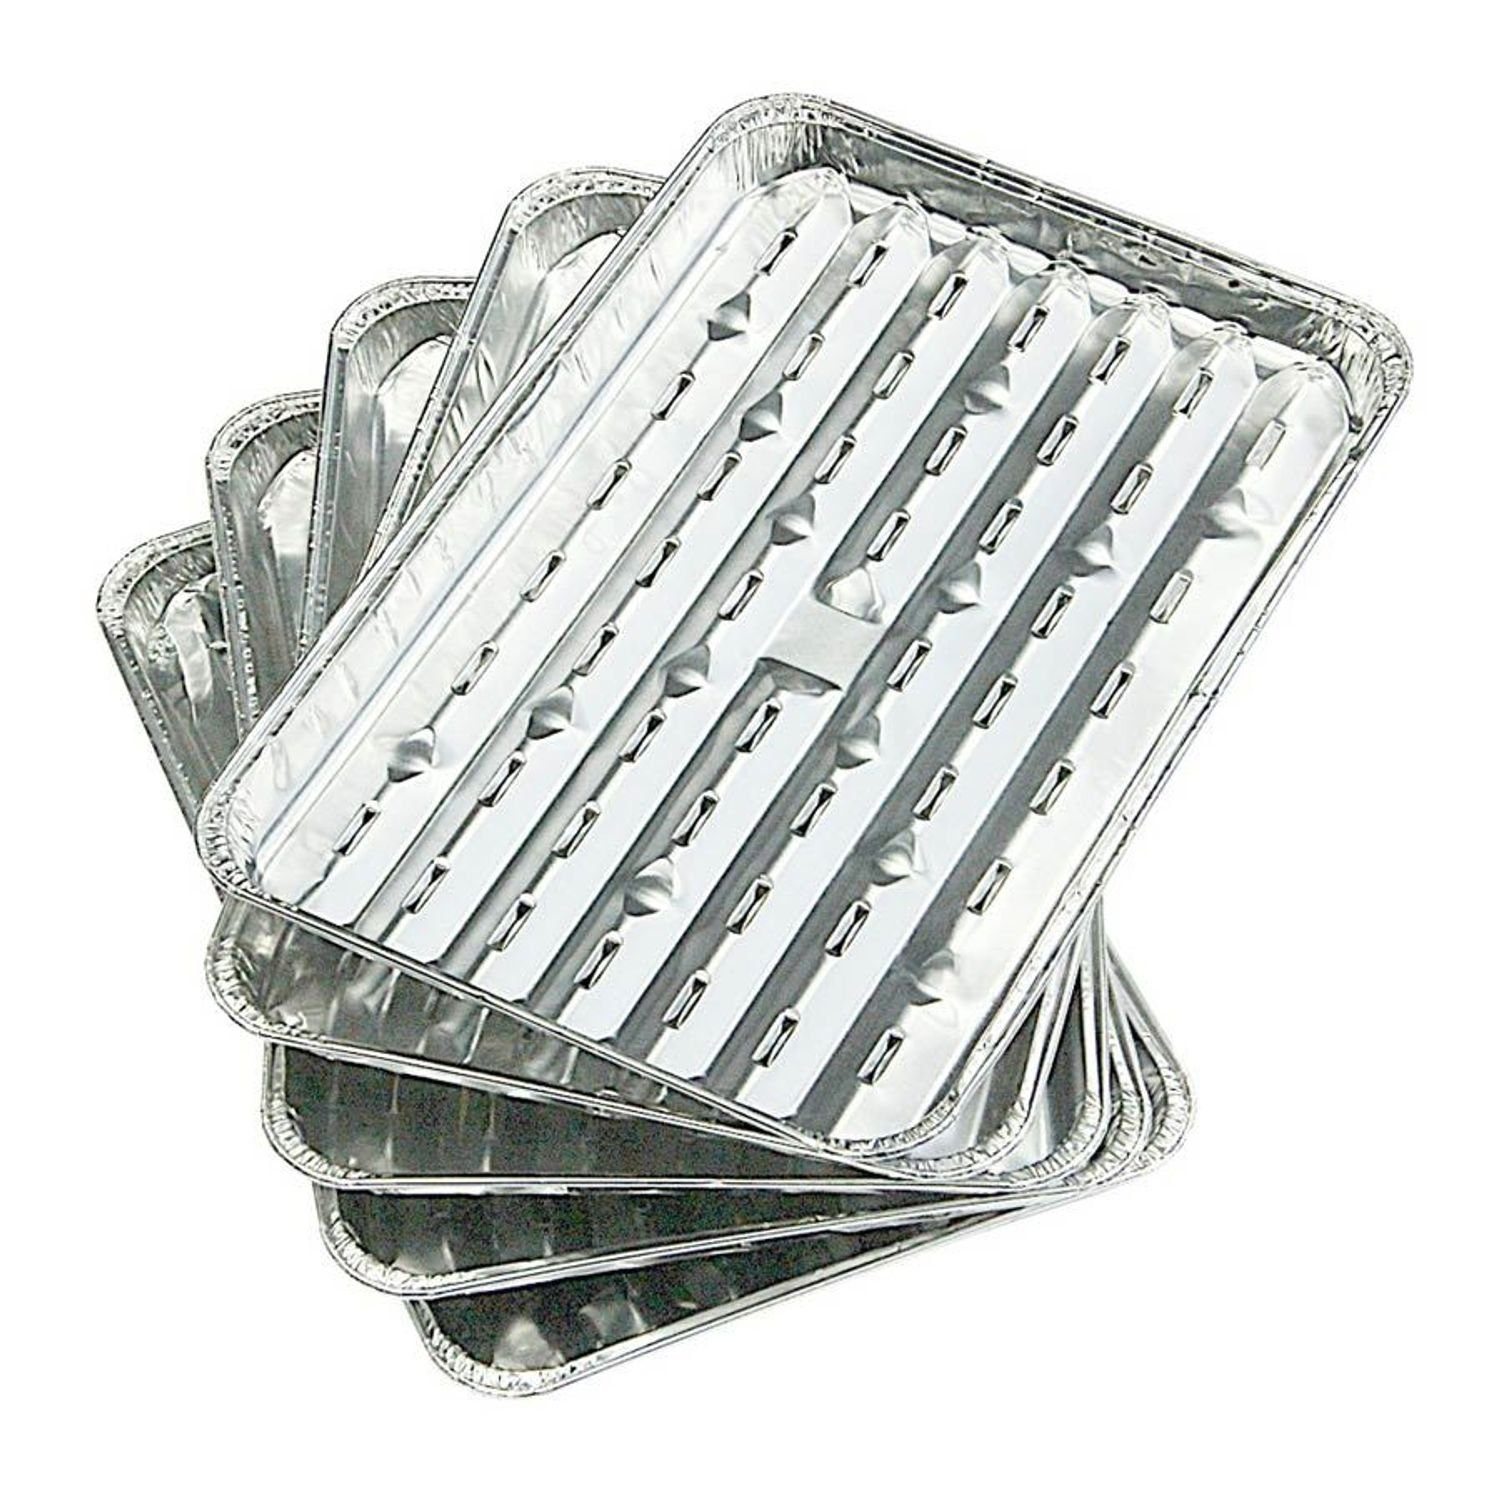 Grillpfanne Aluminium Alu-Grillpfannen Grillrost Grillpfanne Grillschale Grillkorb, 5er-Set BURI